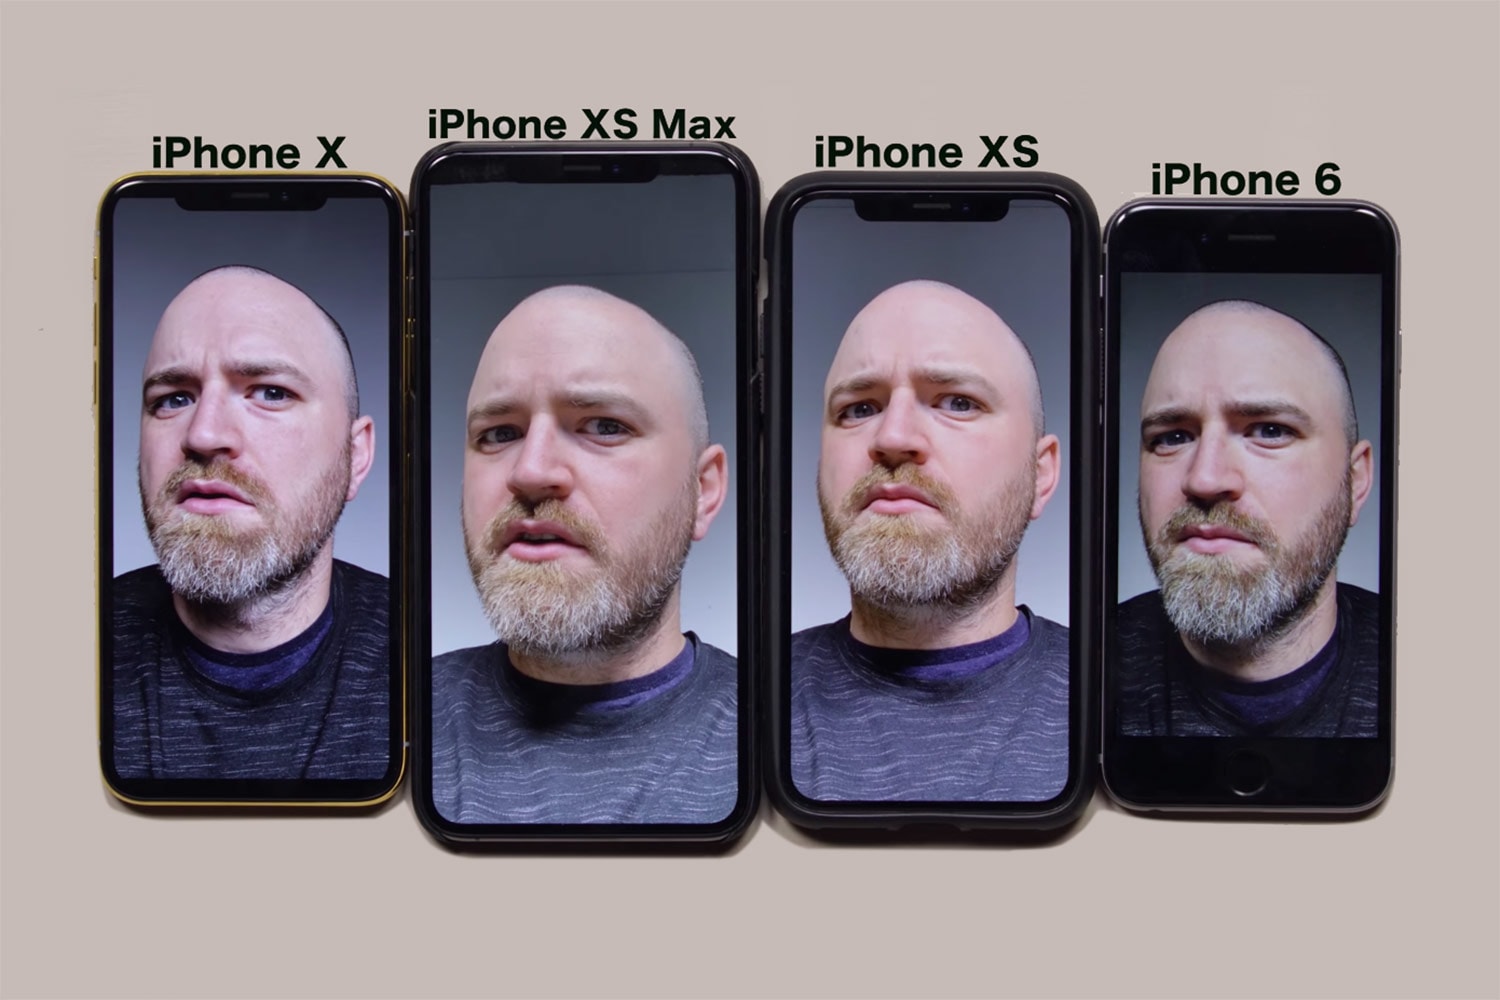 애플 아이폰 XS 전면 카메라의 과한 지나친 '뽀샵 효과' 비난 쇄도 원성 스마트 뷰티 모드 HDR 2018